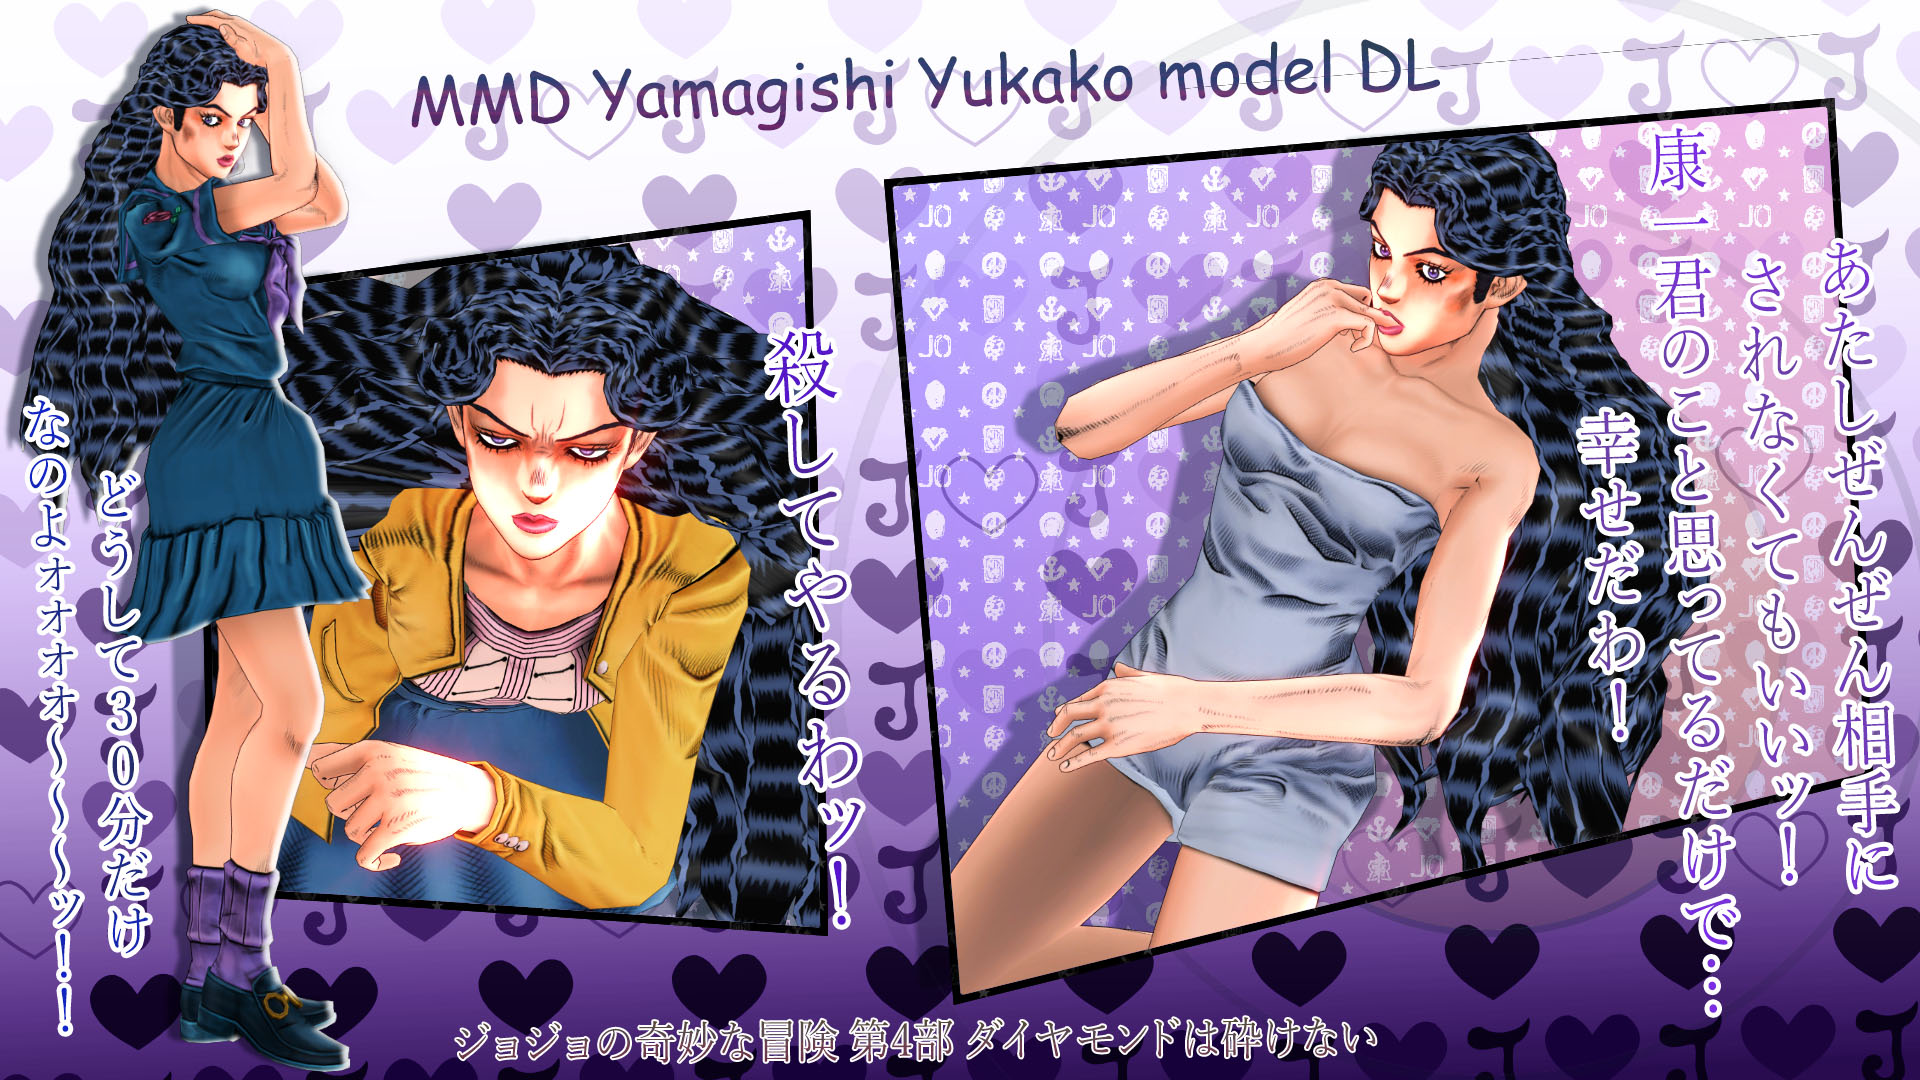 Mmd Yamagishi Yukako Model Dl By Reol1999 On Deviantart